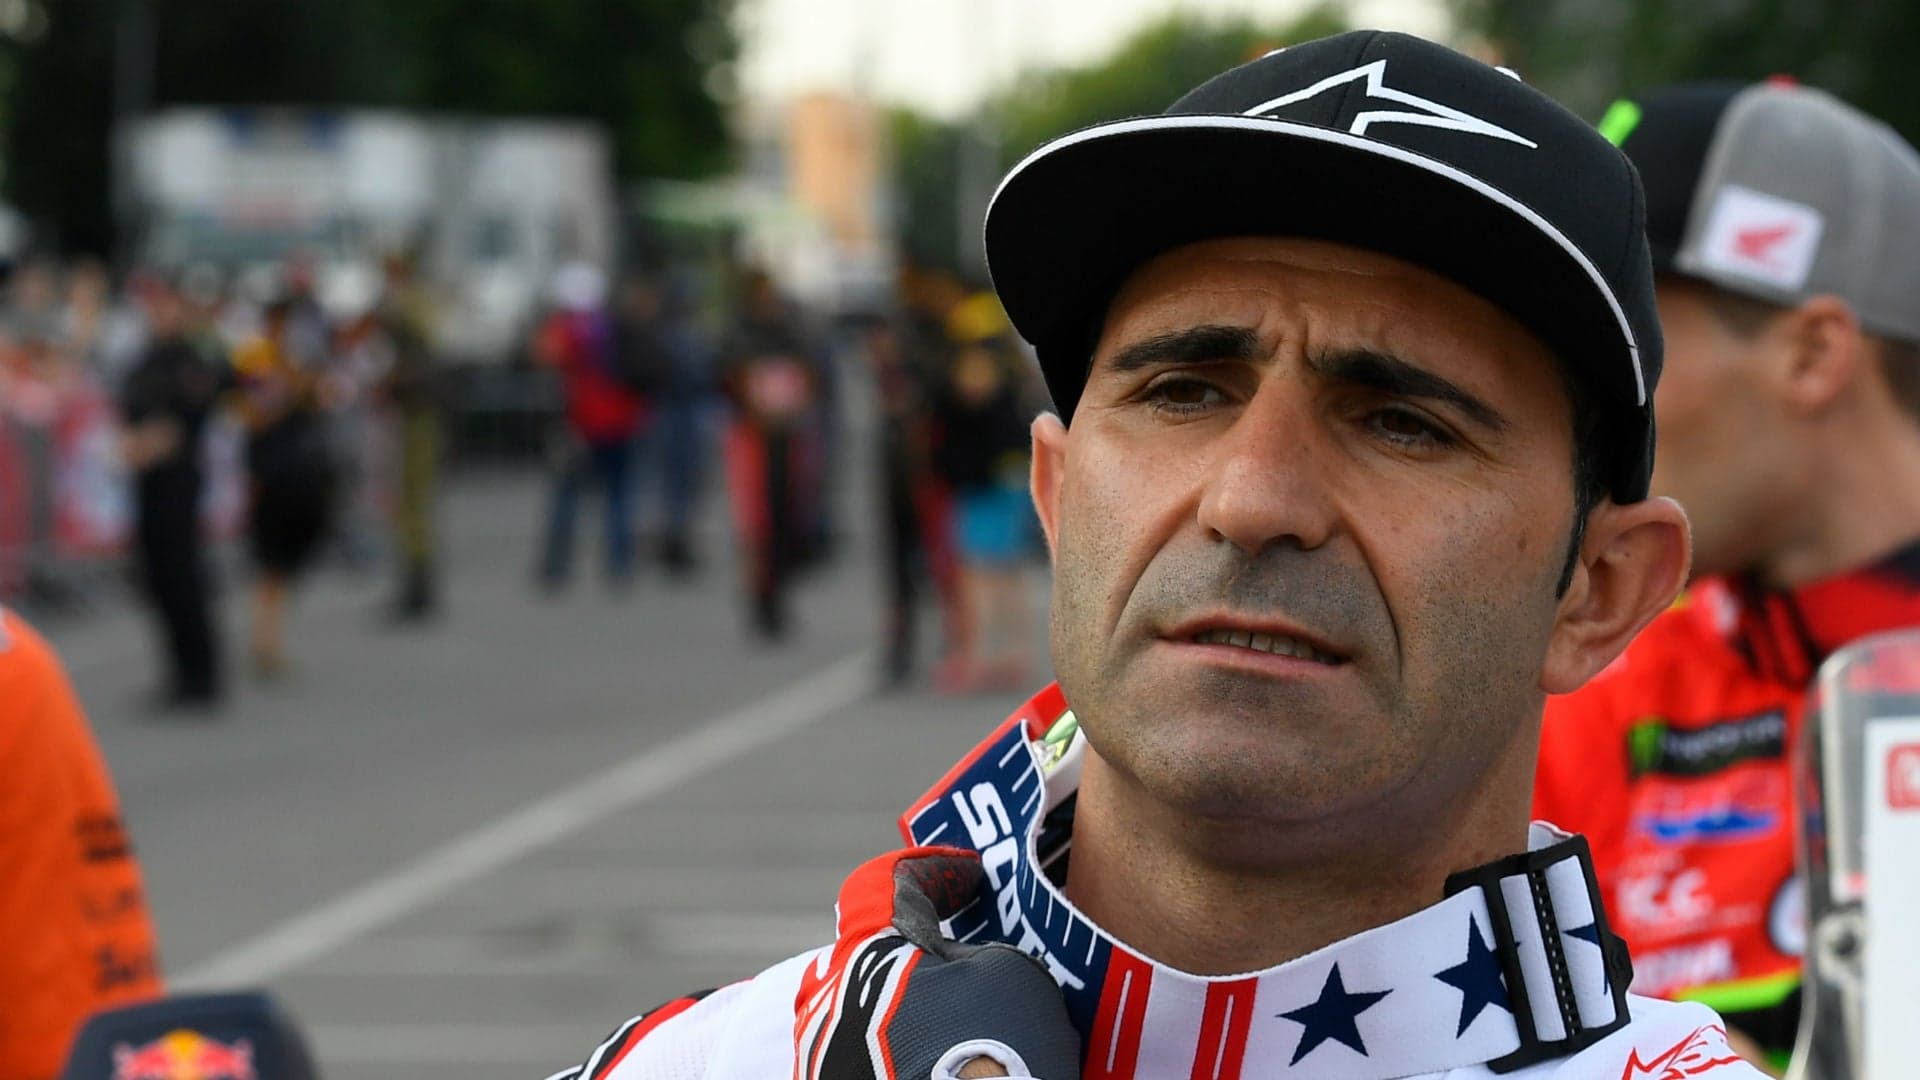 Veteran Motorcycle Racer Paulo Goncalves, 40, Dies After Dakar Rally Crash